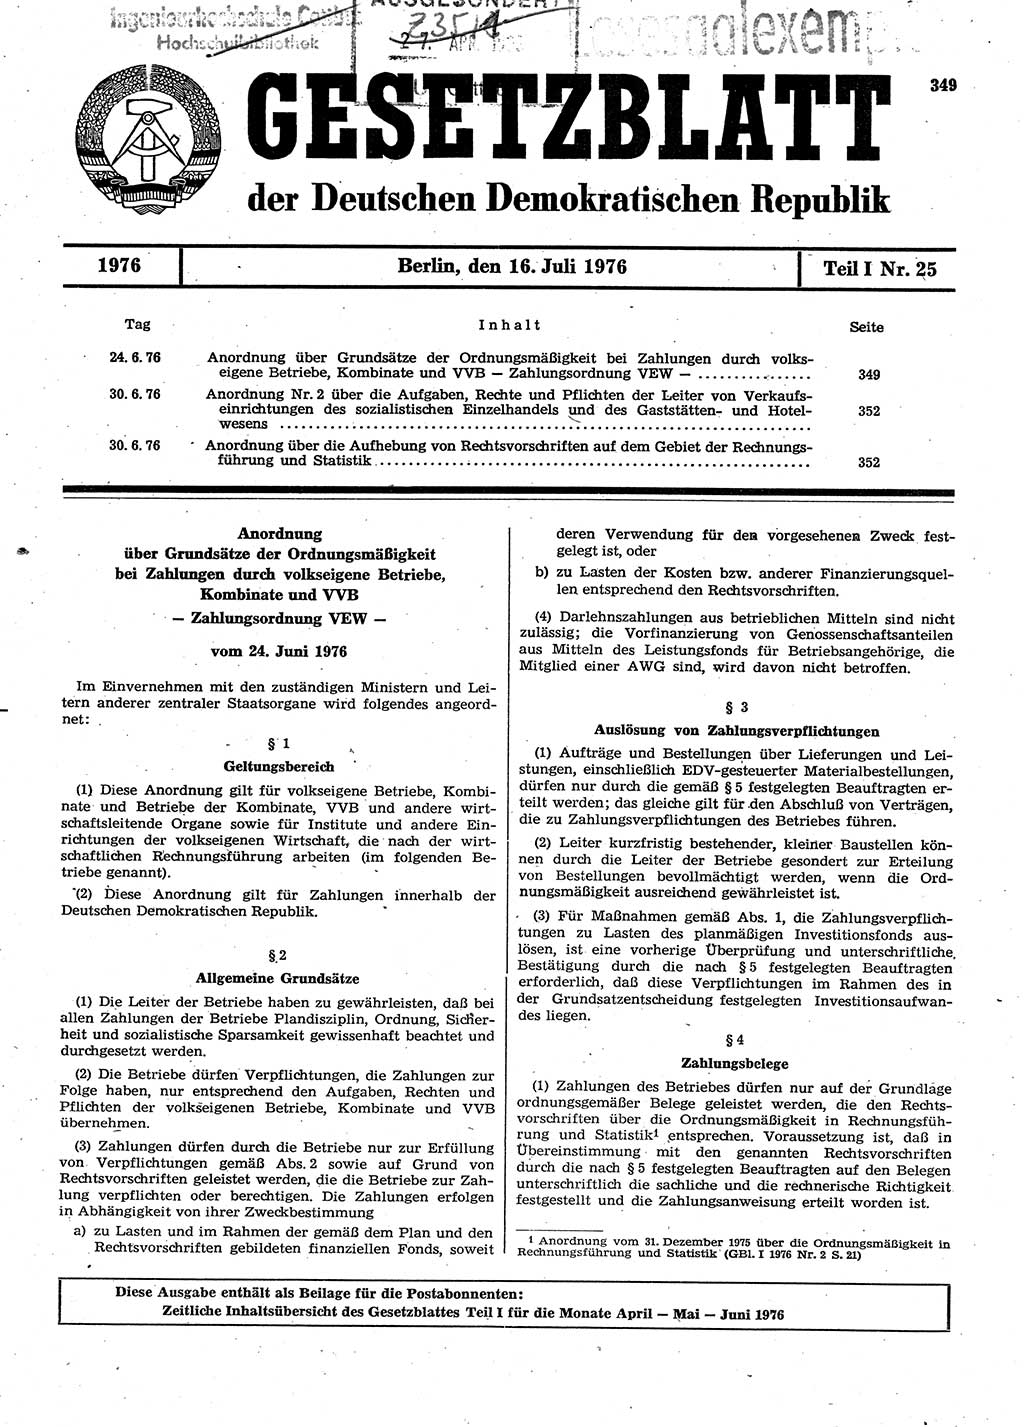 Gesetzblatt (GBl.) der Deutschen Demokratischen Republik (DDR) Teil Ⅰ 1976, Seite 349 (GBl. DDR Ⅰ 1976, S. 349)